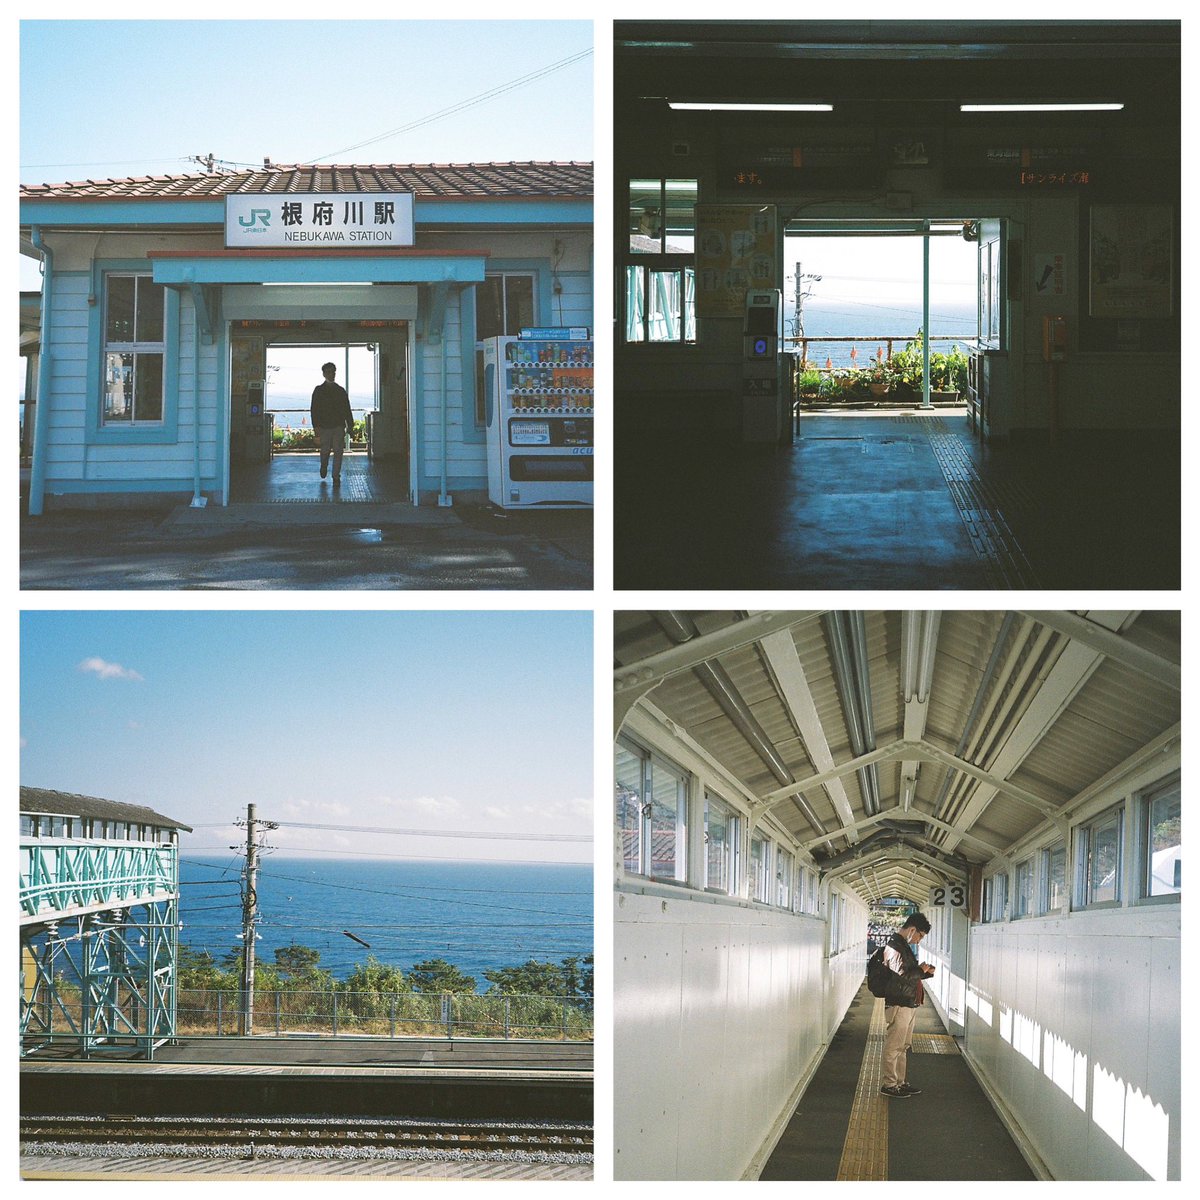 あの青と穏やかに流れる時間にふれたい。

#根府川駅 #電車を何本見送ったかな 
#フィルム写真 #フィルムカメラ 
#filmphotography #filmcamera 
#konicabigmini #kodakektar100